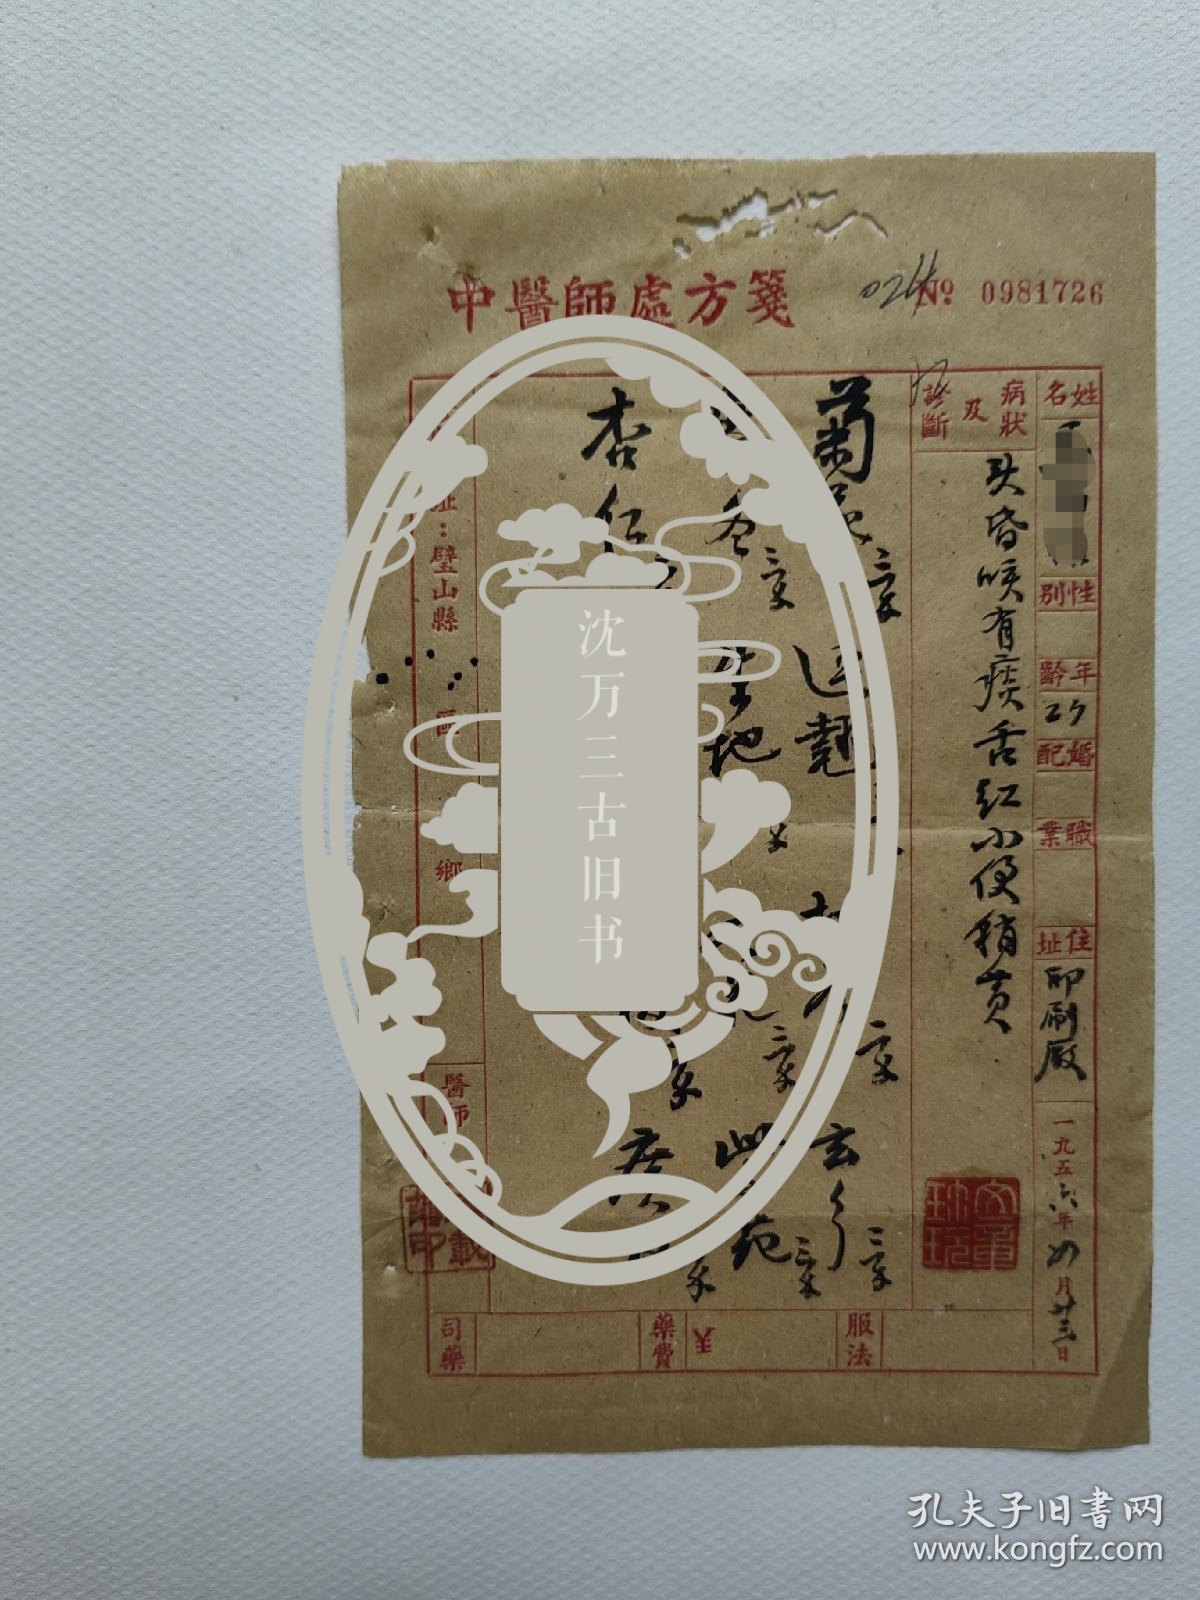 56年，重庆市璧山县 名老中医  唐载藩  毛方处方一页。 患者：头昏咳有痰，舌红、小便稍黄。